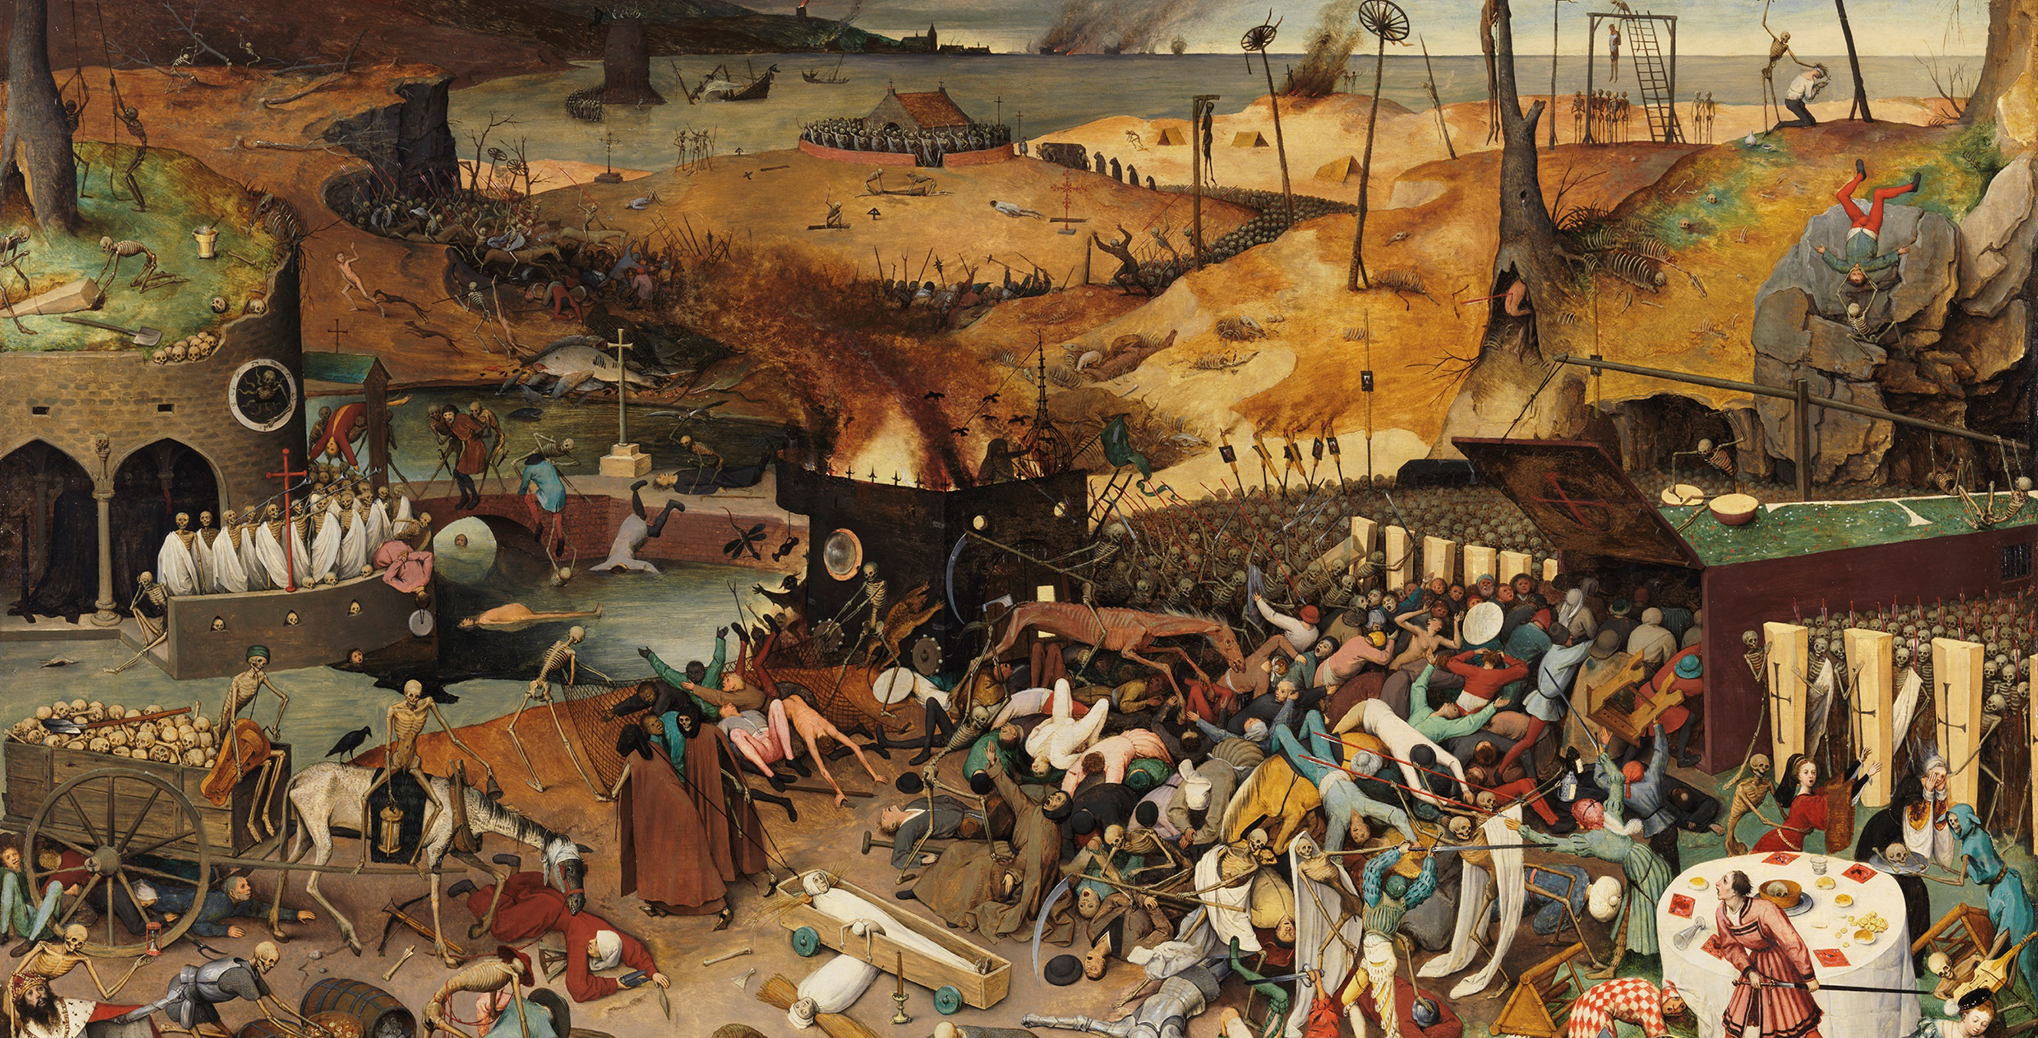 El Museo del Prado expone El triunfo de la Muerte de Bruegel tras su restauración con la colaboración de la Fundación Iberdrola España